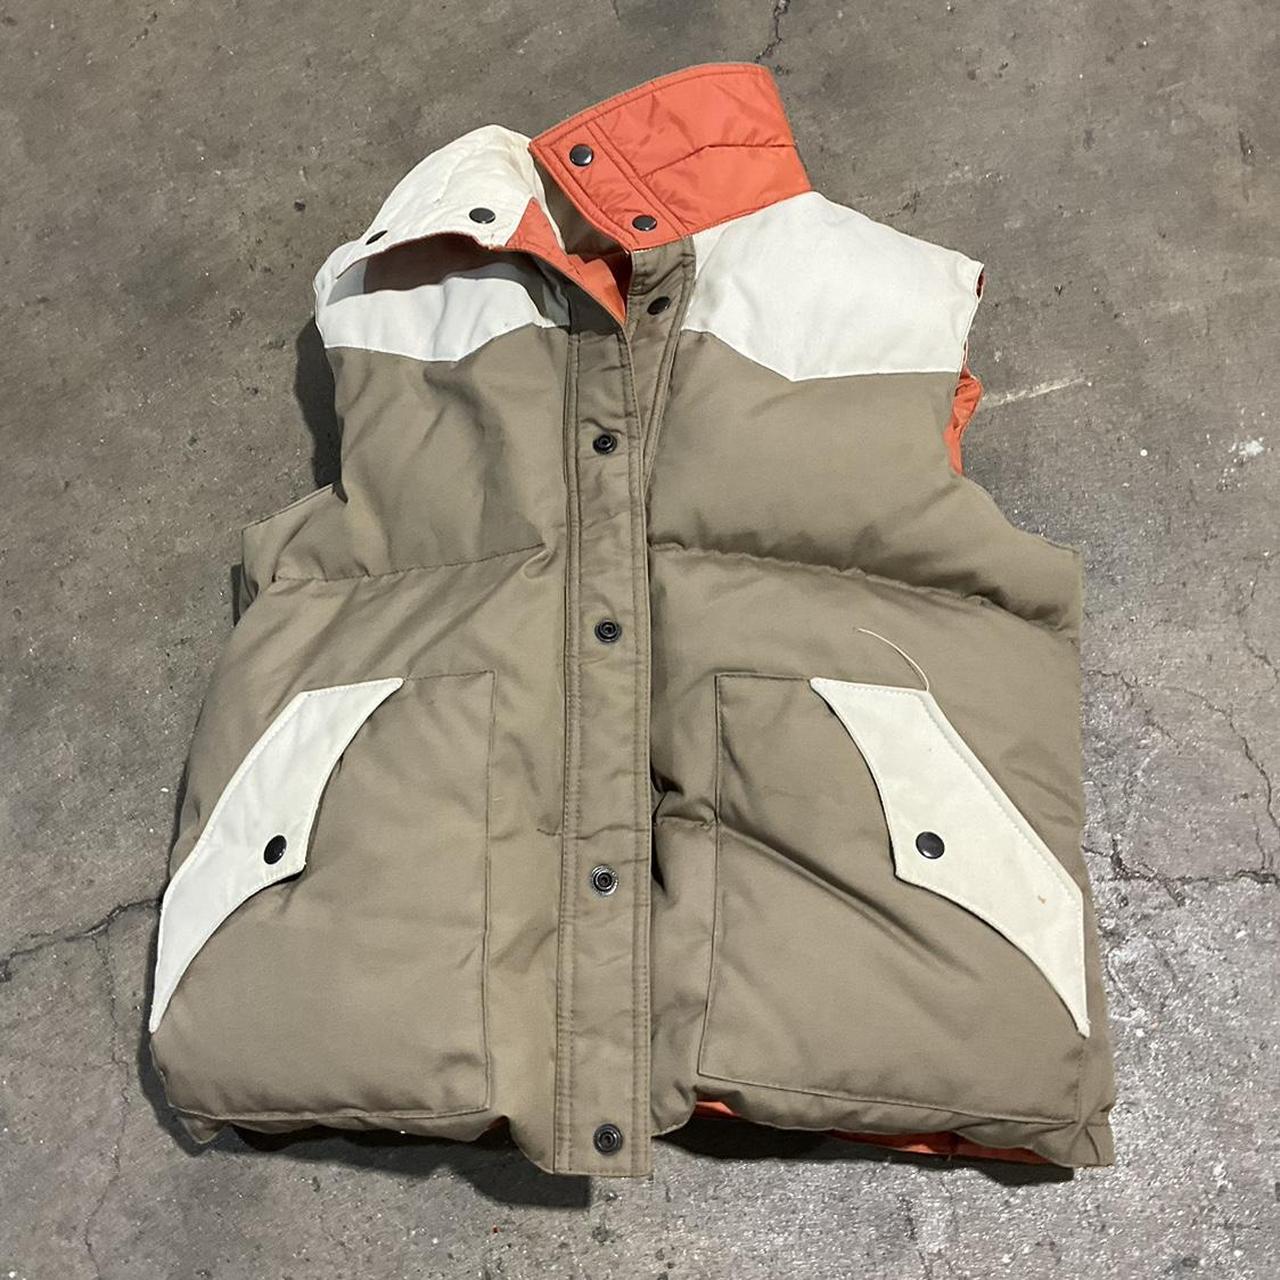 Puffer vest Tan and orange Reversible - Depop